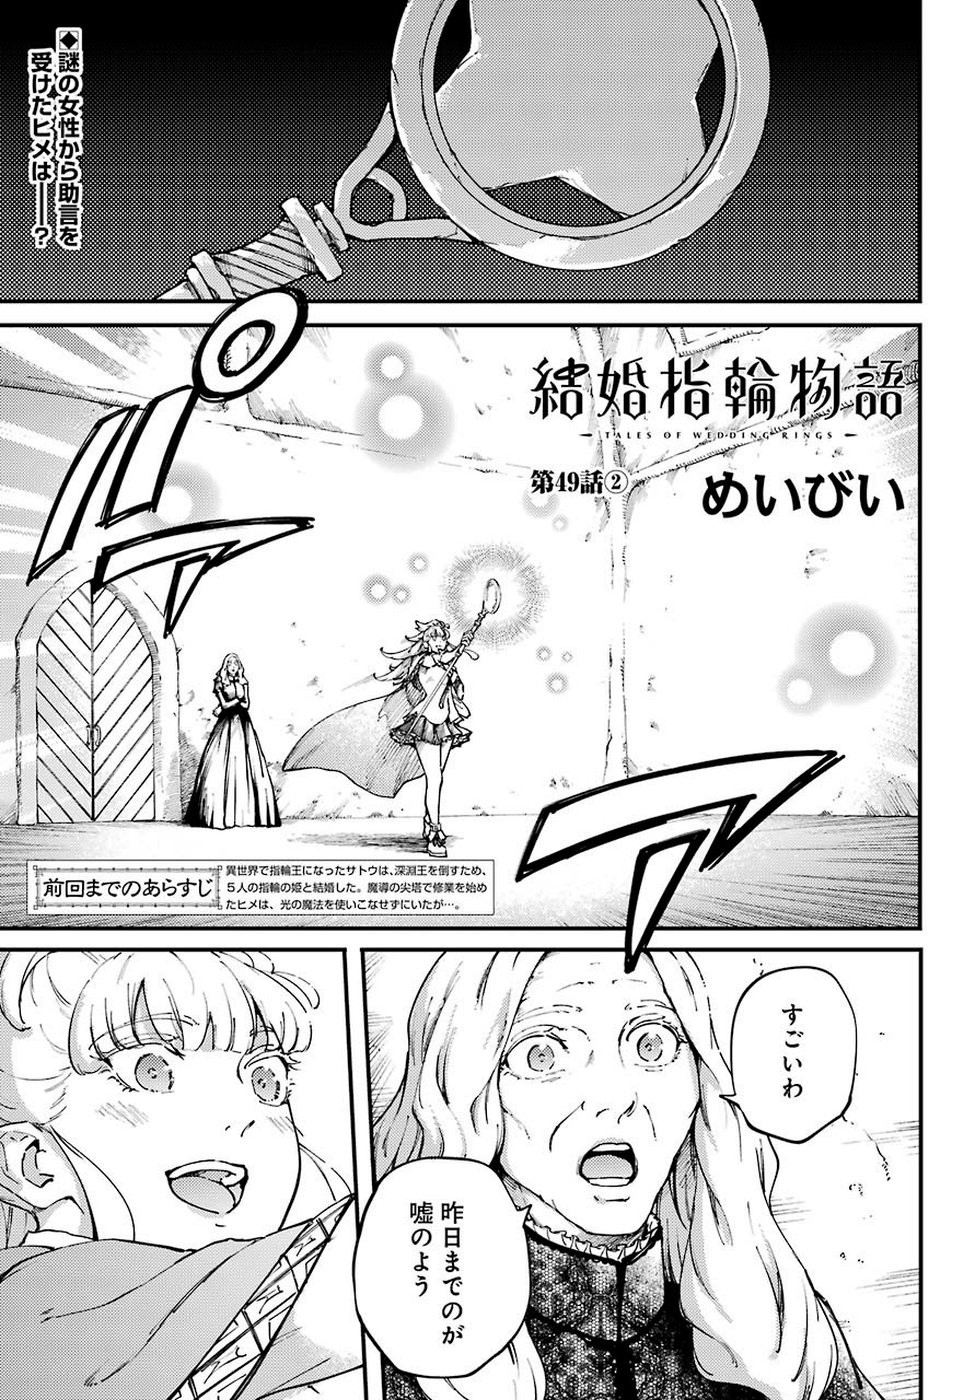 Kekkon Yubiwa Monogatari Chapter 49 5 Page 1 Raw Manga 生漫画